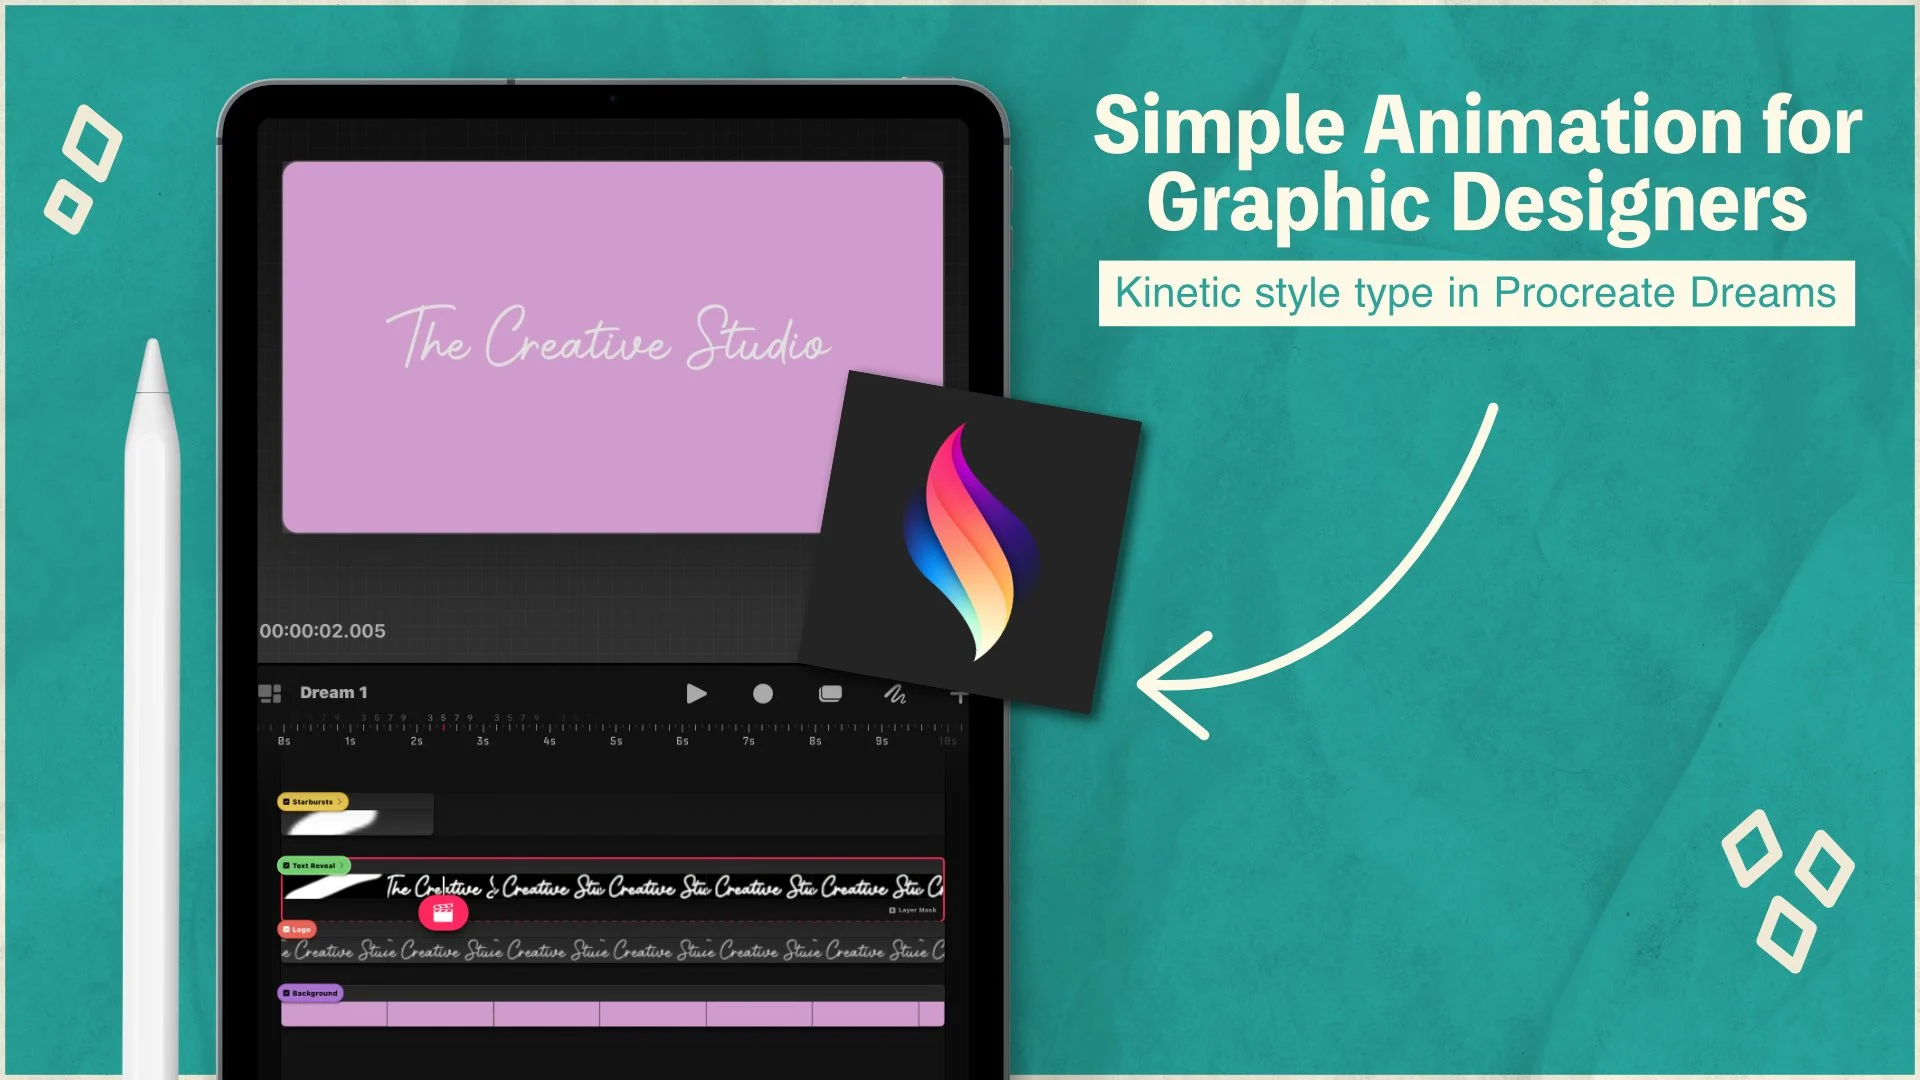 آموزش انیمیشن ساده برای طراحان گرافیک - کاوش نوع جنبشی در رویاهای نسل